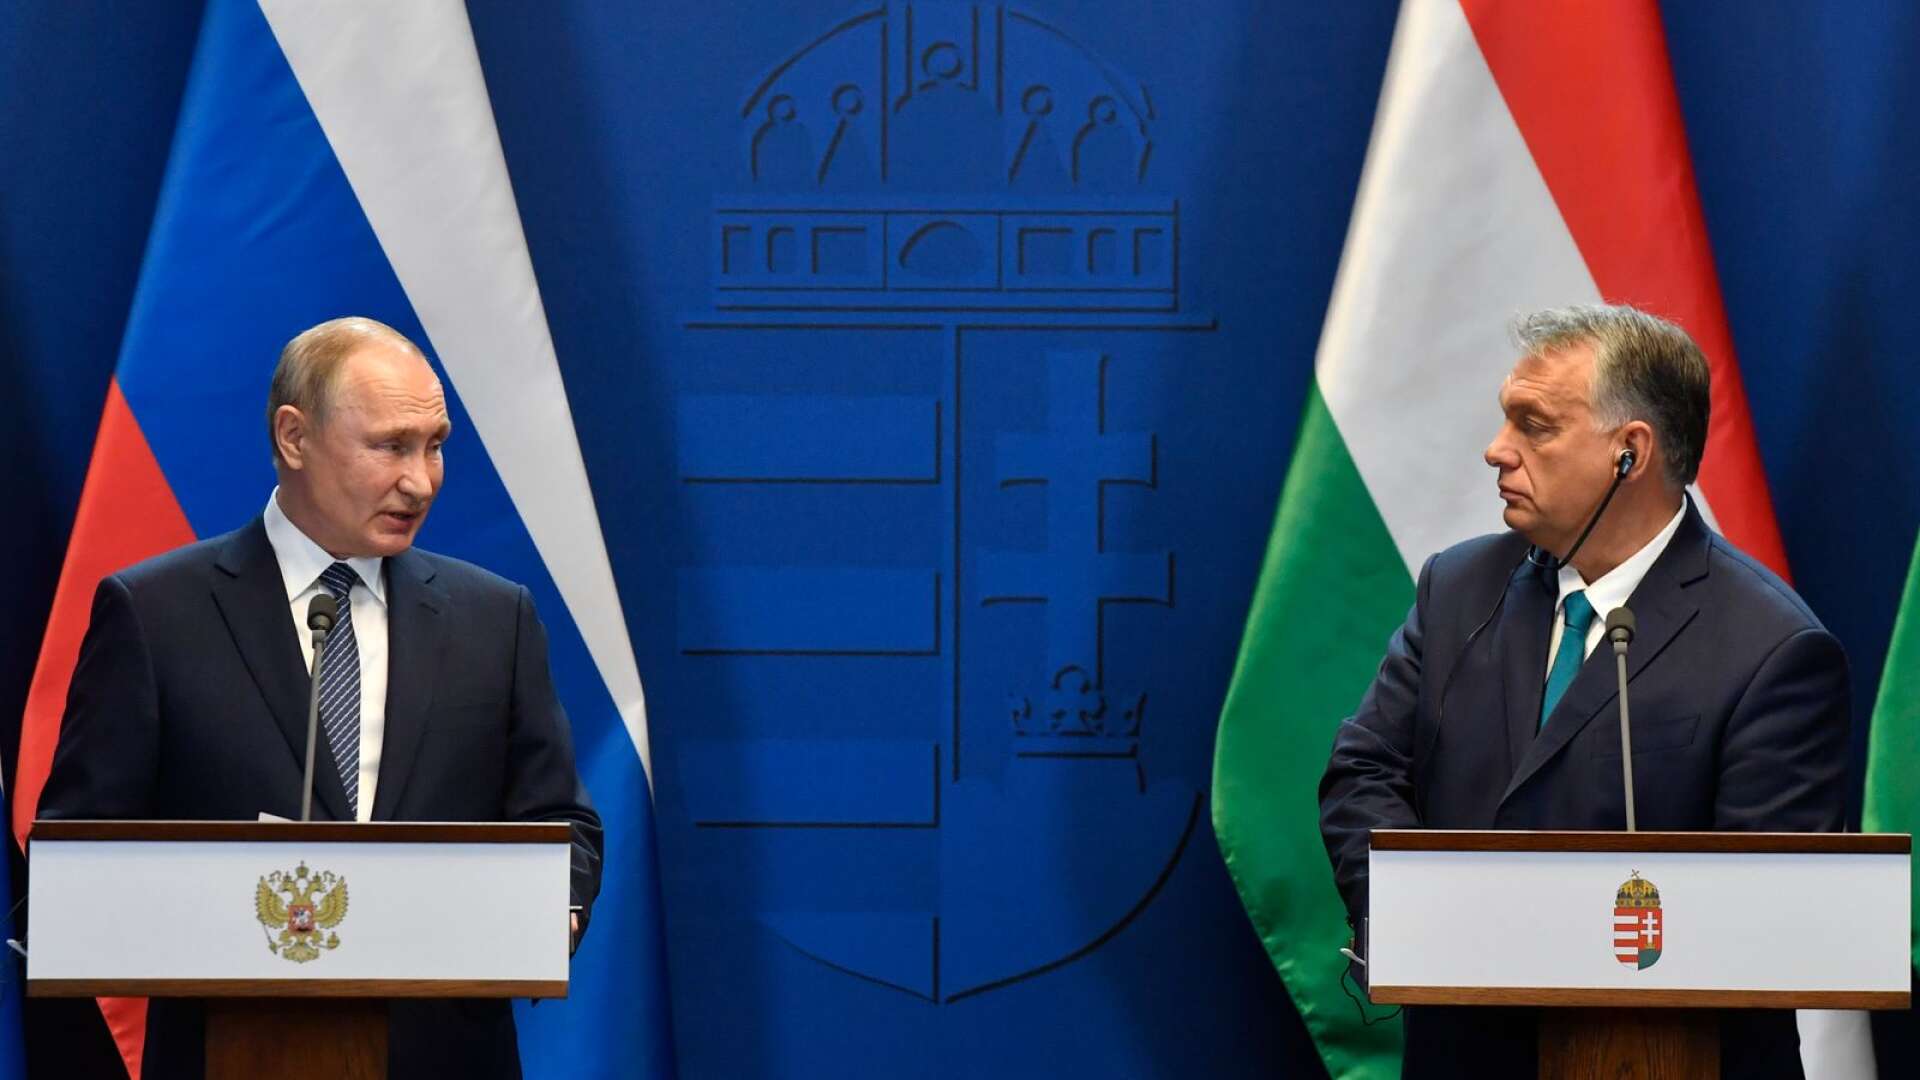 Orbán är EU:s svaga punkt när det kommer till Ryssland och Vladimir Putin. Till skillnad från resten av unionen har han haft svårt att distansera sig från Ryssland, och premiärministerns goda relation till den ryske presidenten är väldokumenterad, skriver Alex Vårstrand.